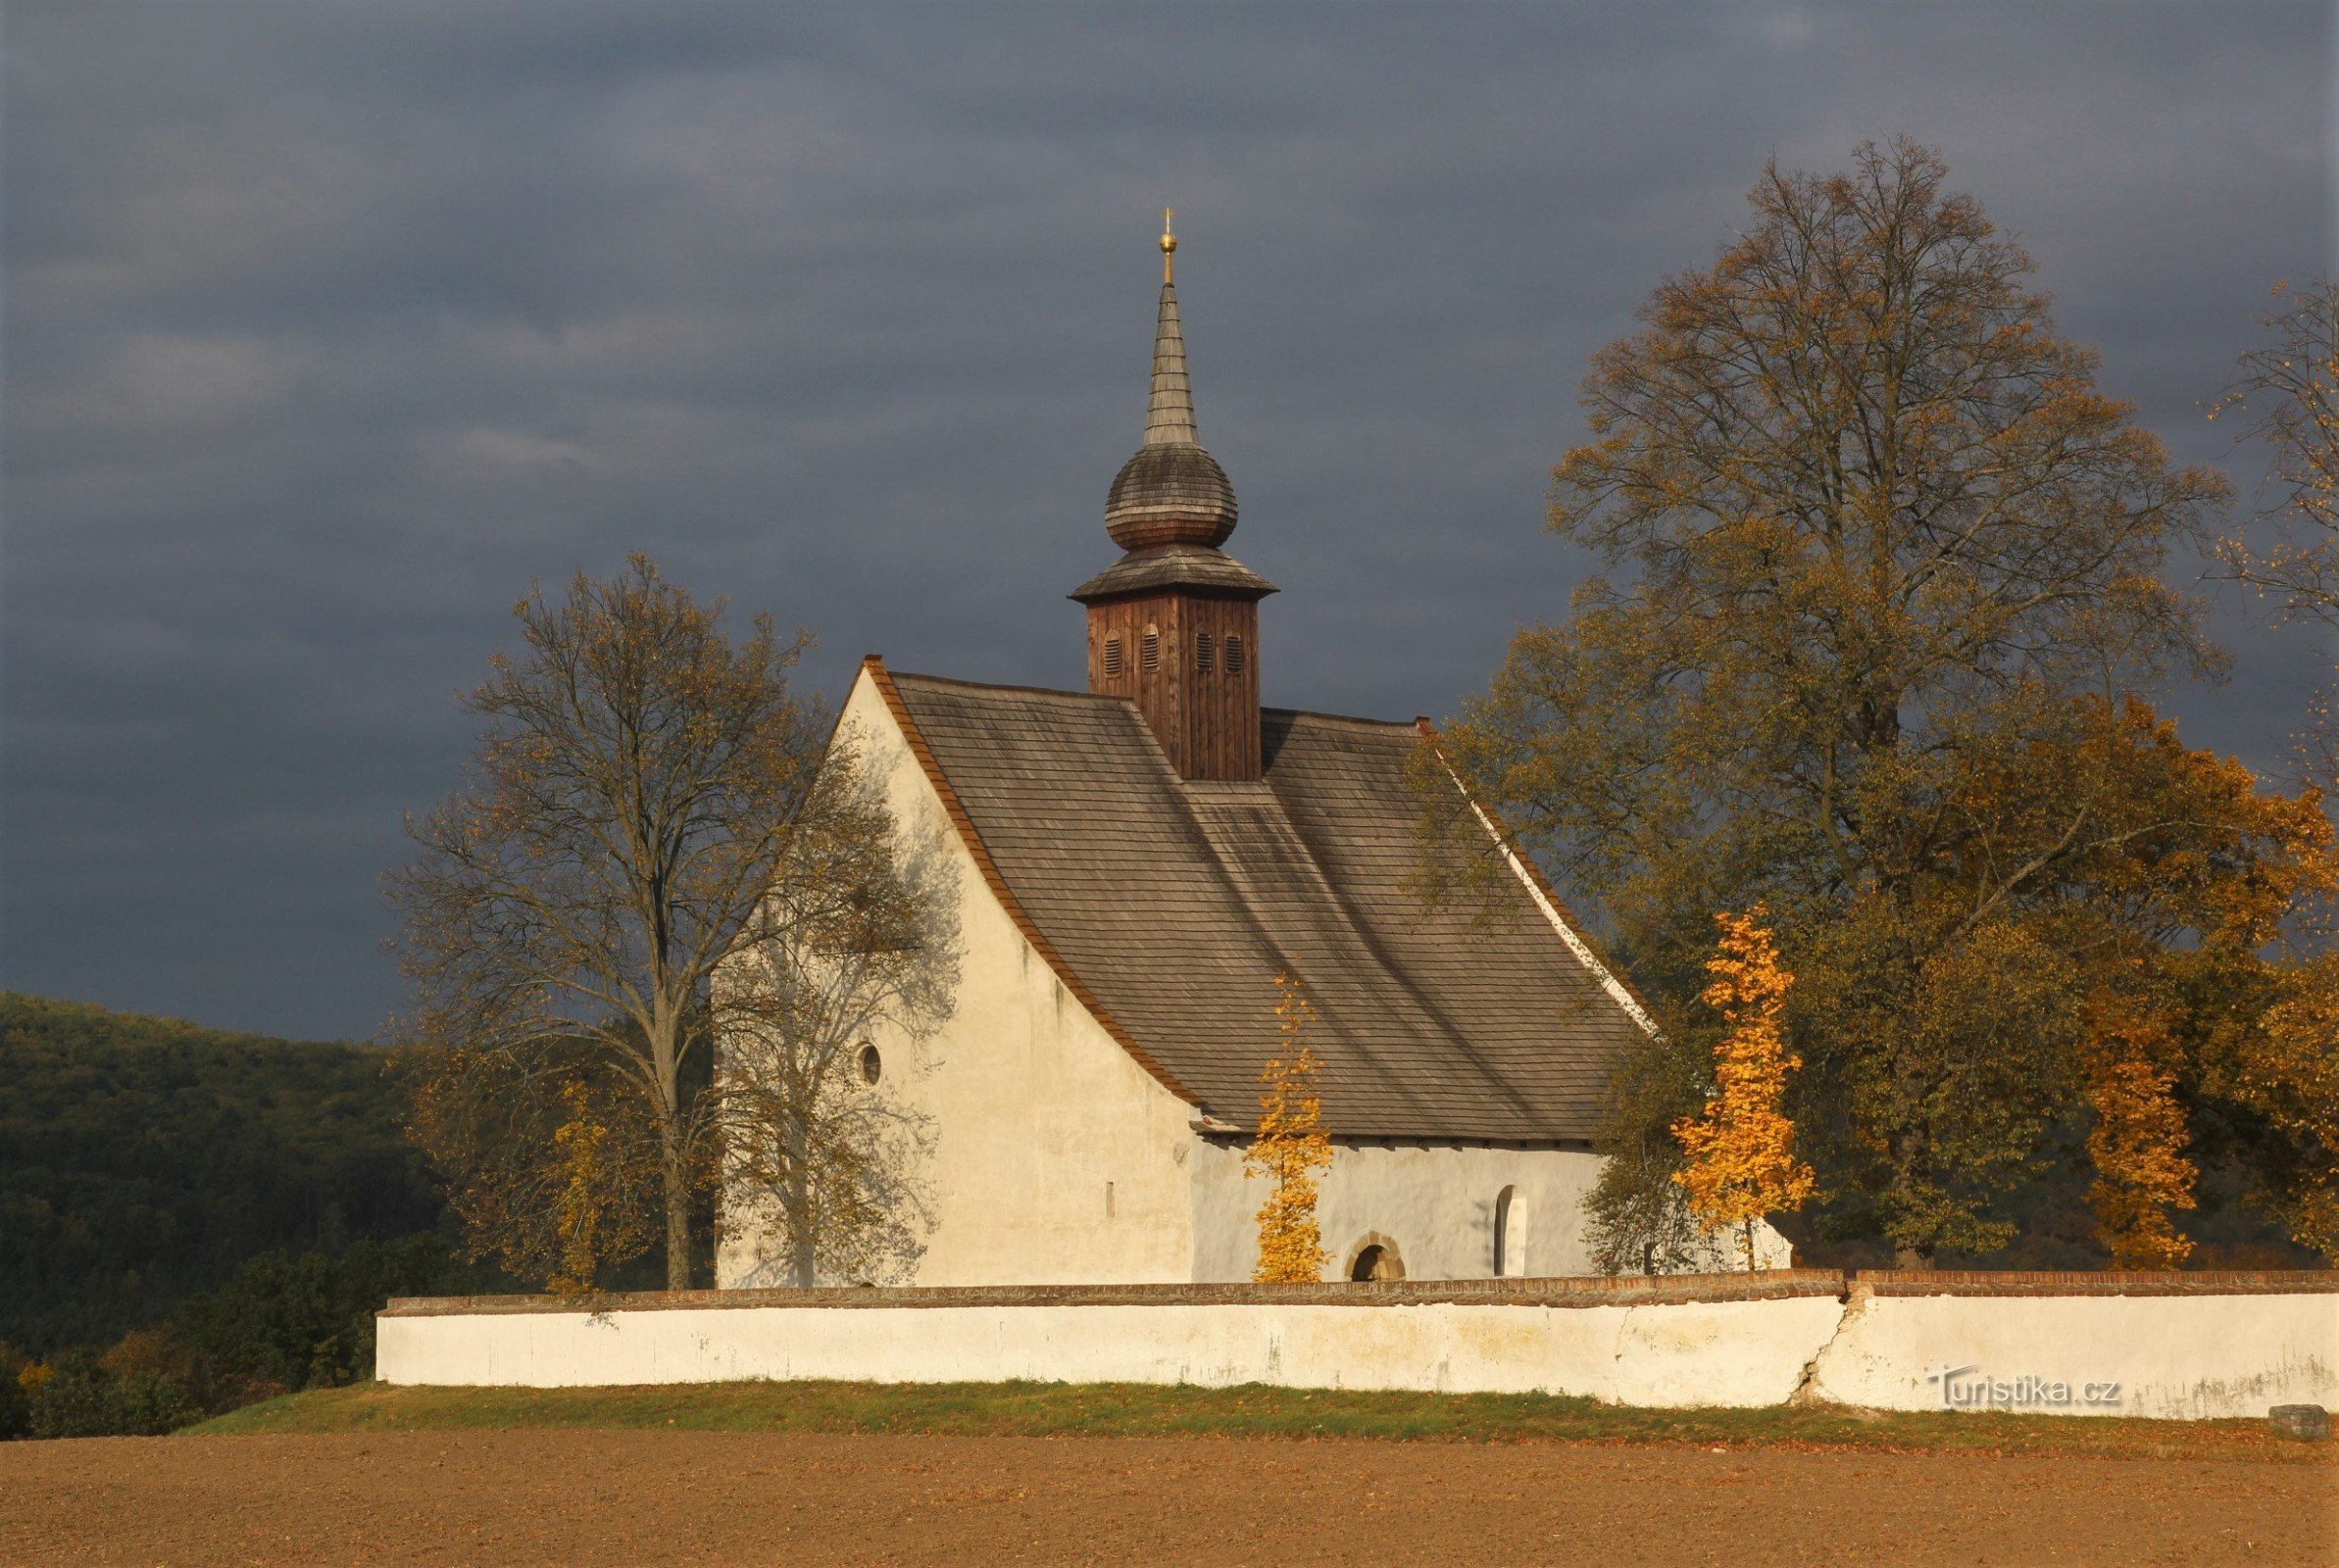 Veveří - Church of the Assumption of the Virgin Mary